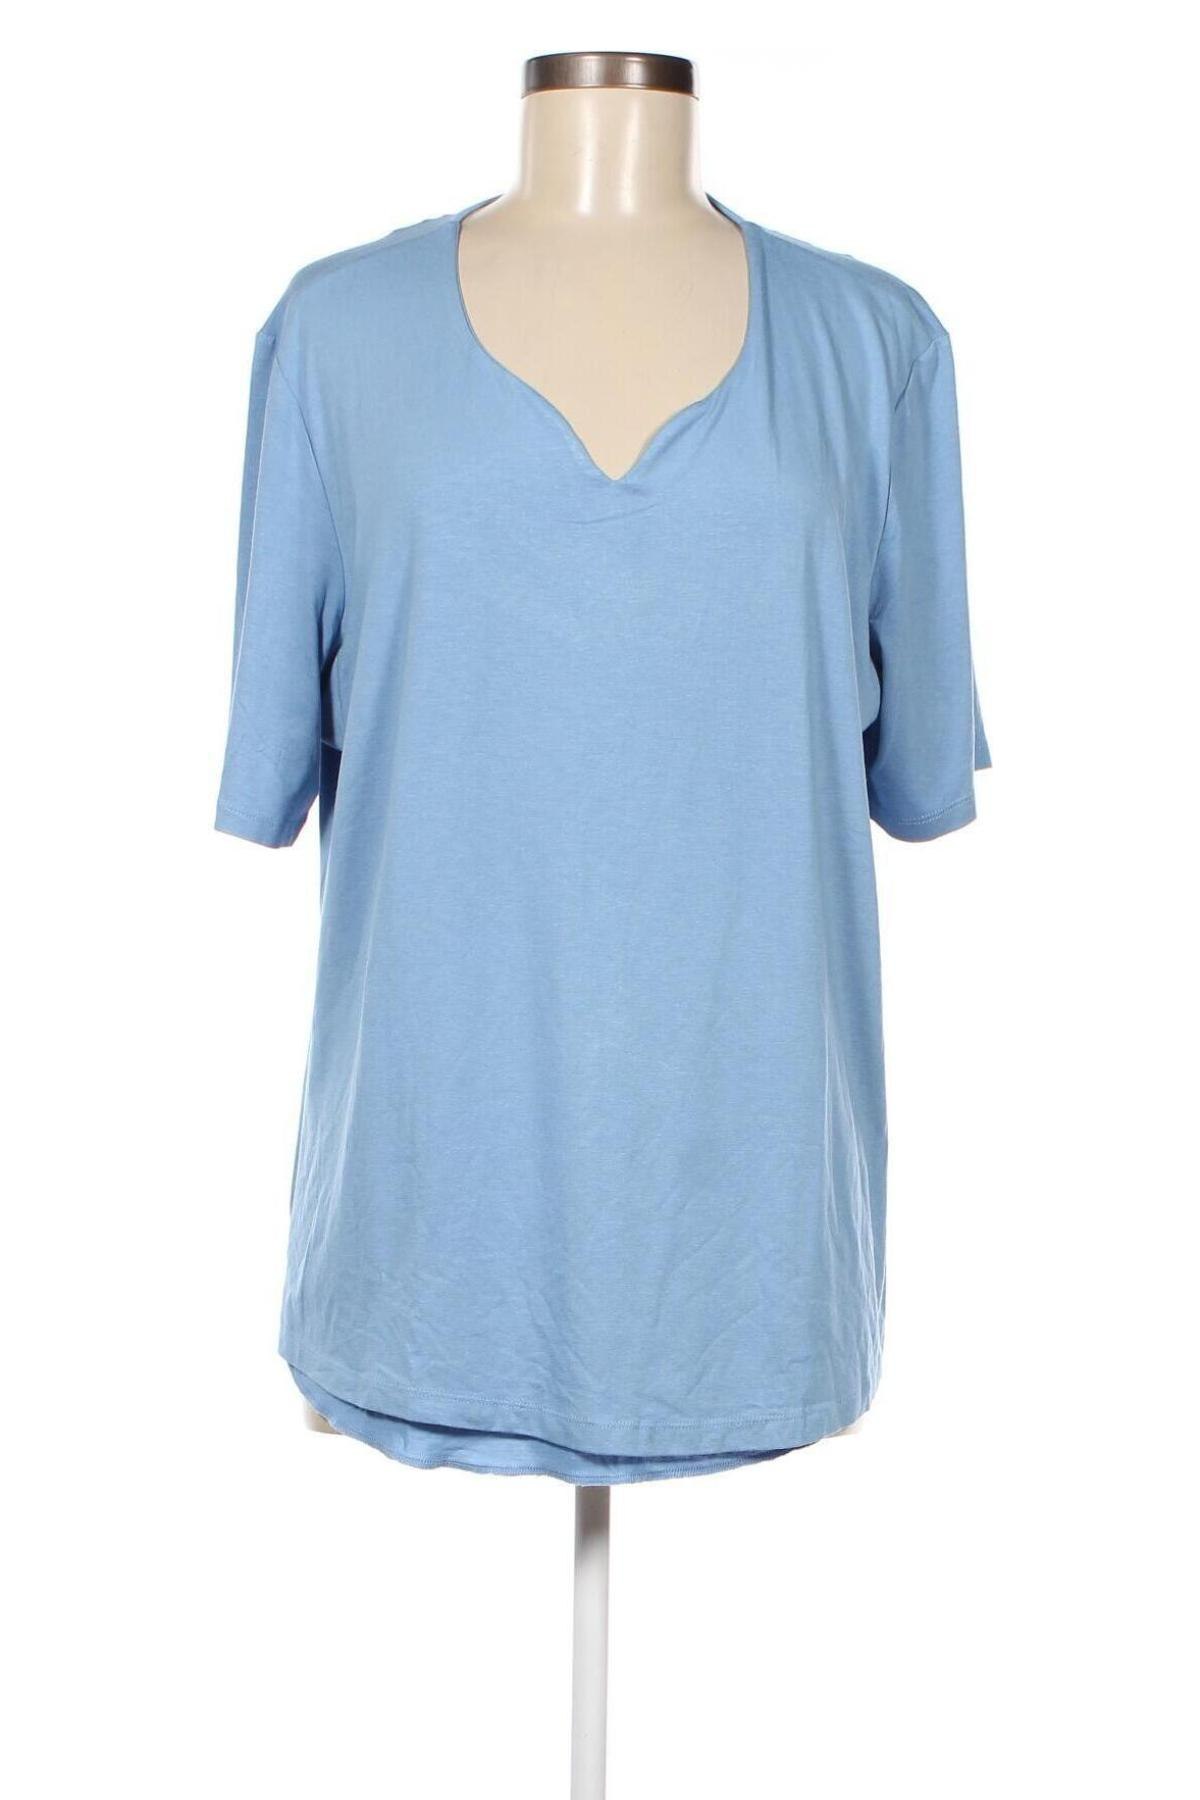 Γυναικεία μπλούζα Helena Vera, Μέγεθος XL, Χρώμα Μπλέ, 95% βισκόζη, 5% ελαστάνη, Τιμή 34,64 €